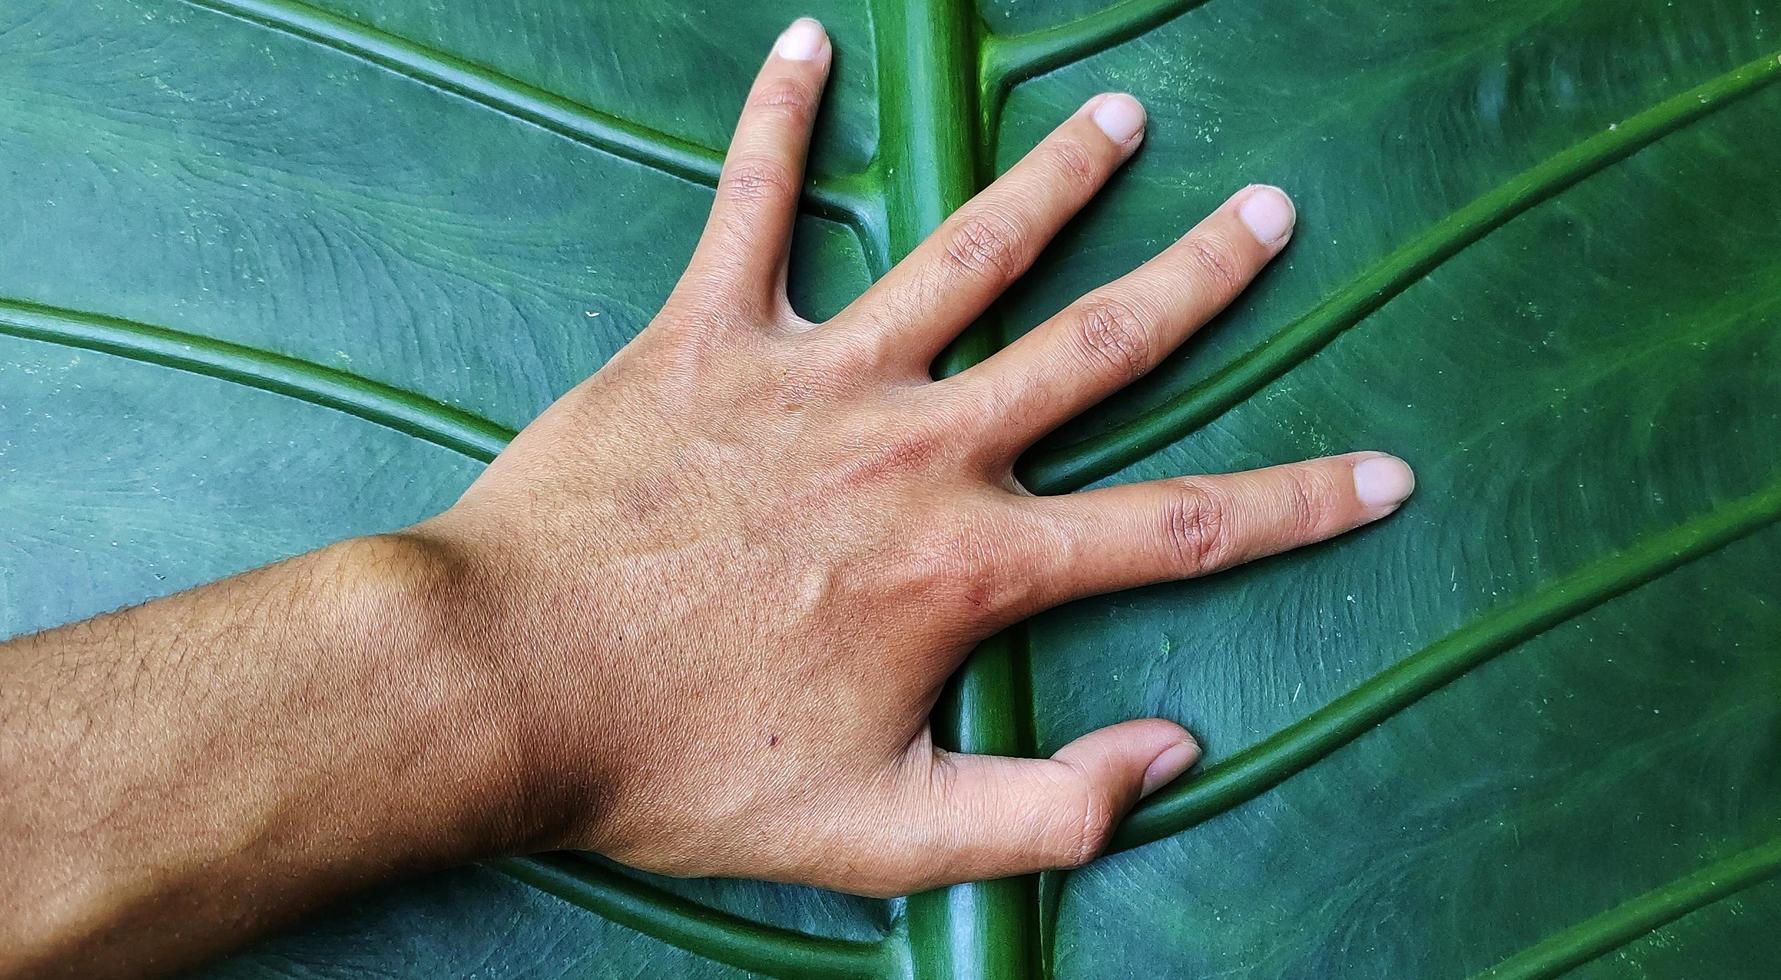 een portret van een reusachtig taro blad met de Latijns naam alocasia macrorrhizen is heel groot, zelfs groter dan een volwassen hand- foto